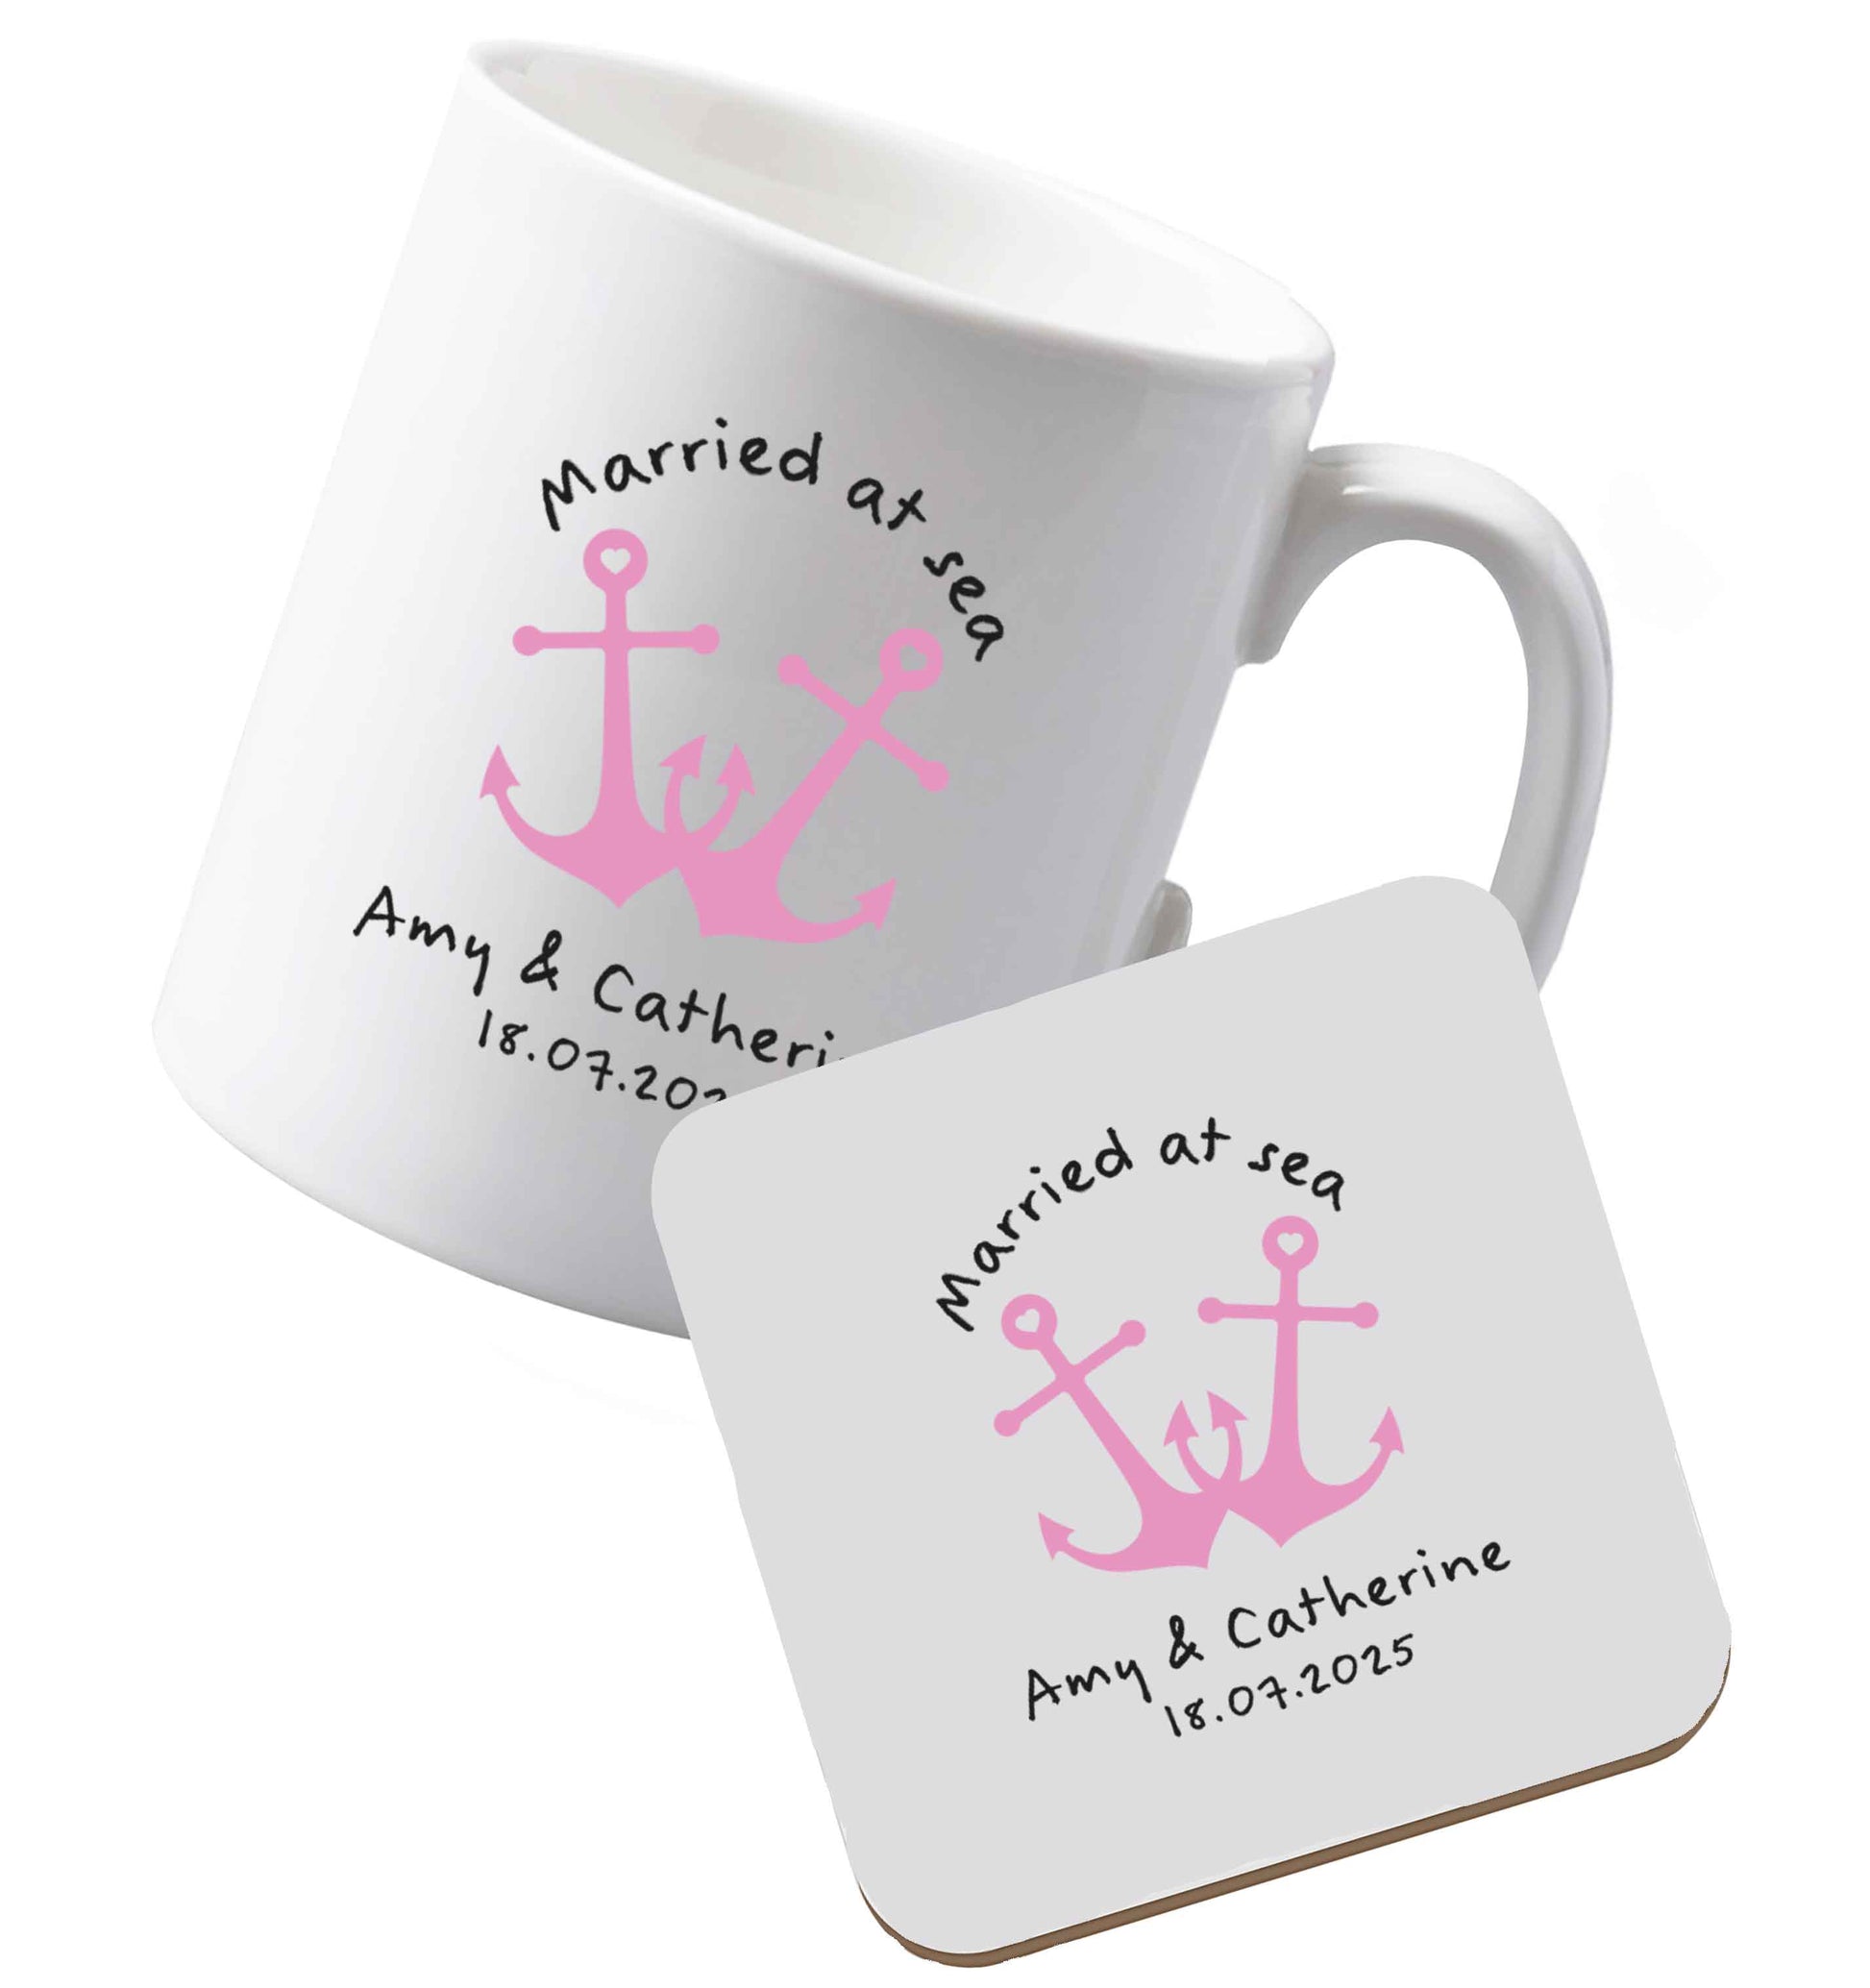 10 oz Ceramic mug and coaster Married at sea pink anchors both sides